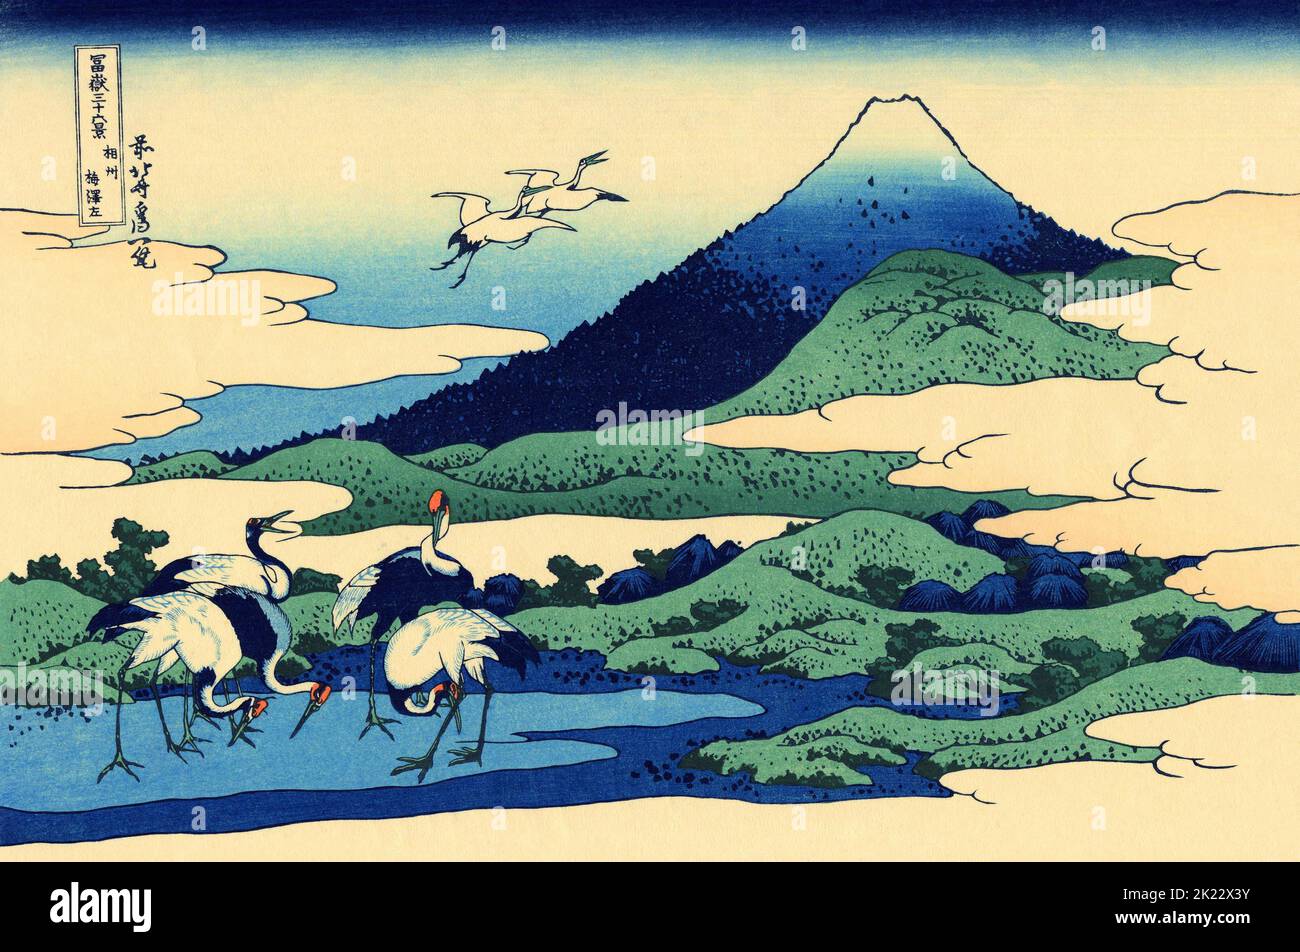 Japon: «Umegawa dans la province de Sagami».Imprimé Ukiyo-e en blocs de bois de la série «trente-six vues du Mont Fuji» de Katsushika Hokusai (31 octobre 1760 - 10 mai 1849), c.1830. «36 vues du Mont Fuji» est une série «ukiyo-e» de grandes gravures sur bois de l'artiste Katsushika Hokusai.La série représente le Mont Fuji dans différentes saisons et conditions météorologiques à partir de divers endroits et distances.Il se compose en fait de 46 tirages créés entre 1826 et 1833.Les 36 premiers ont été inclus dans la publication originale et, en raison de leur popularité, 10 autres ont été ajoutés après la publication originale. Banque D'Images